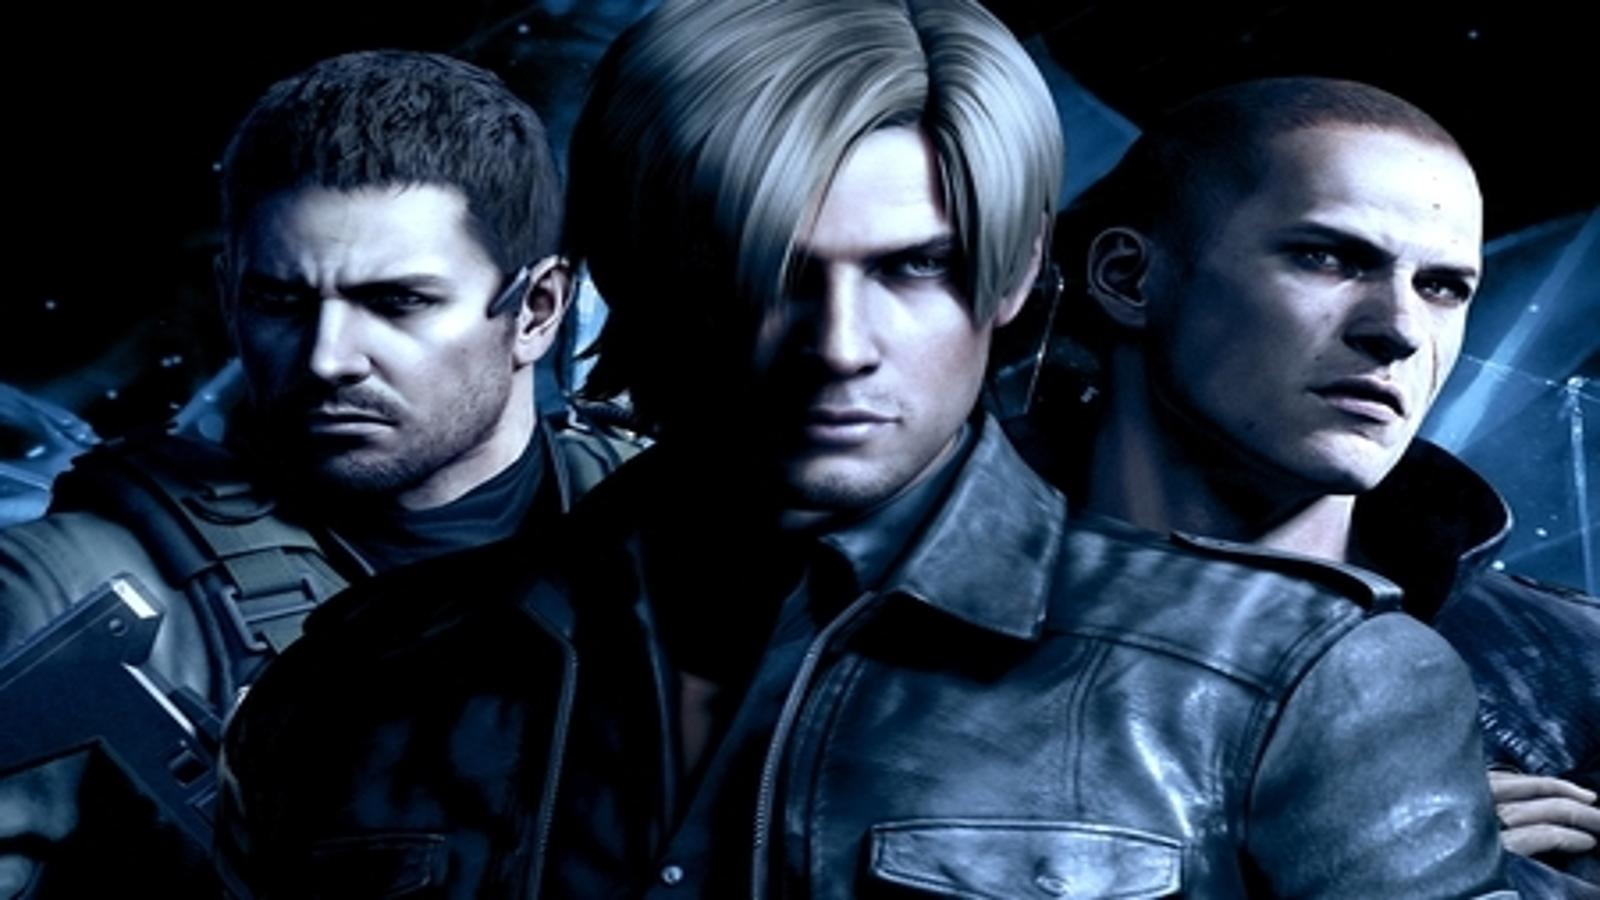 Jogo Xbox 360 Resident Evil 6